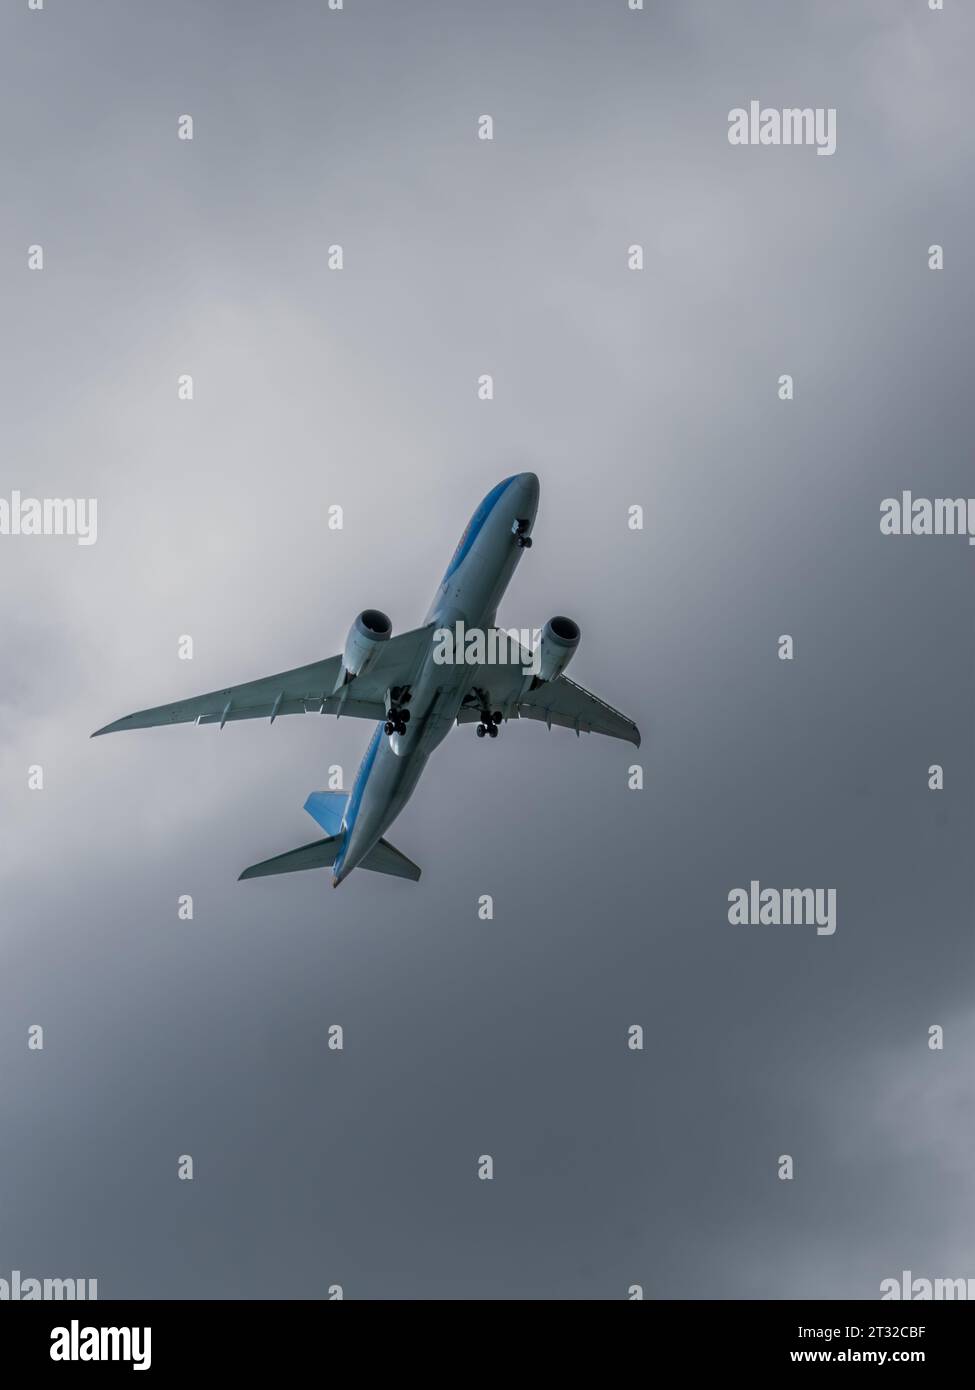 Un avion se préparant à atterrir contre un ciel nuageux - vue du dessous de l'avion avec le train d'atterrissage abaissé Banque D'Images